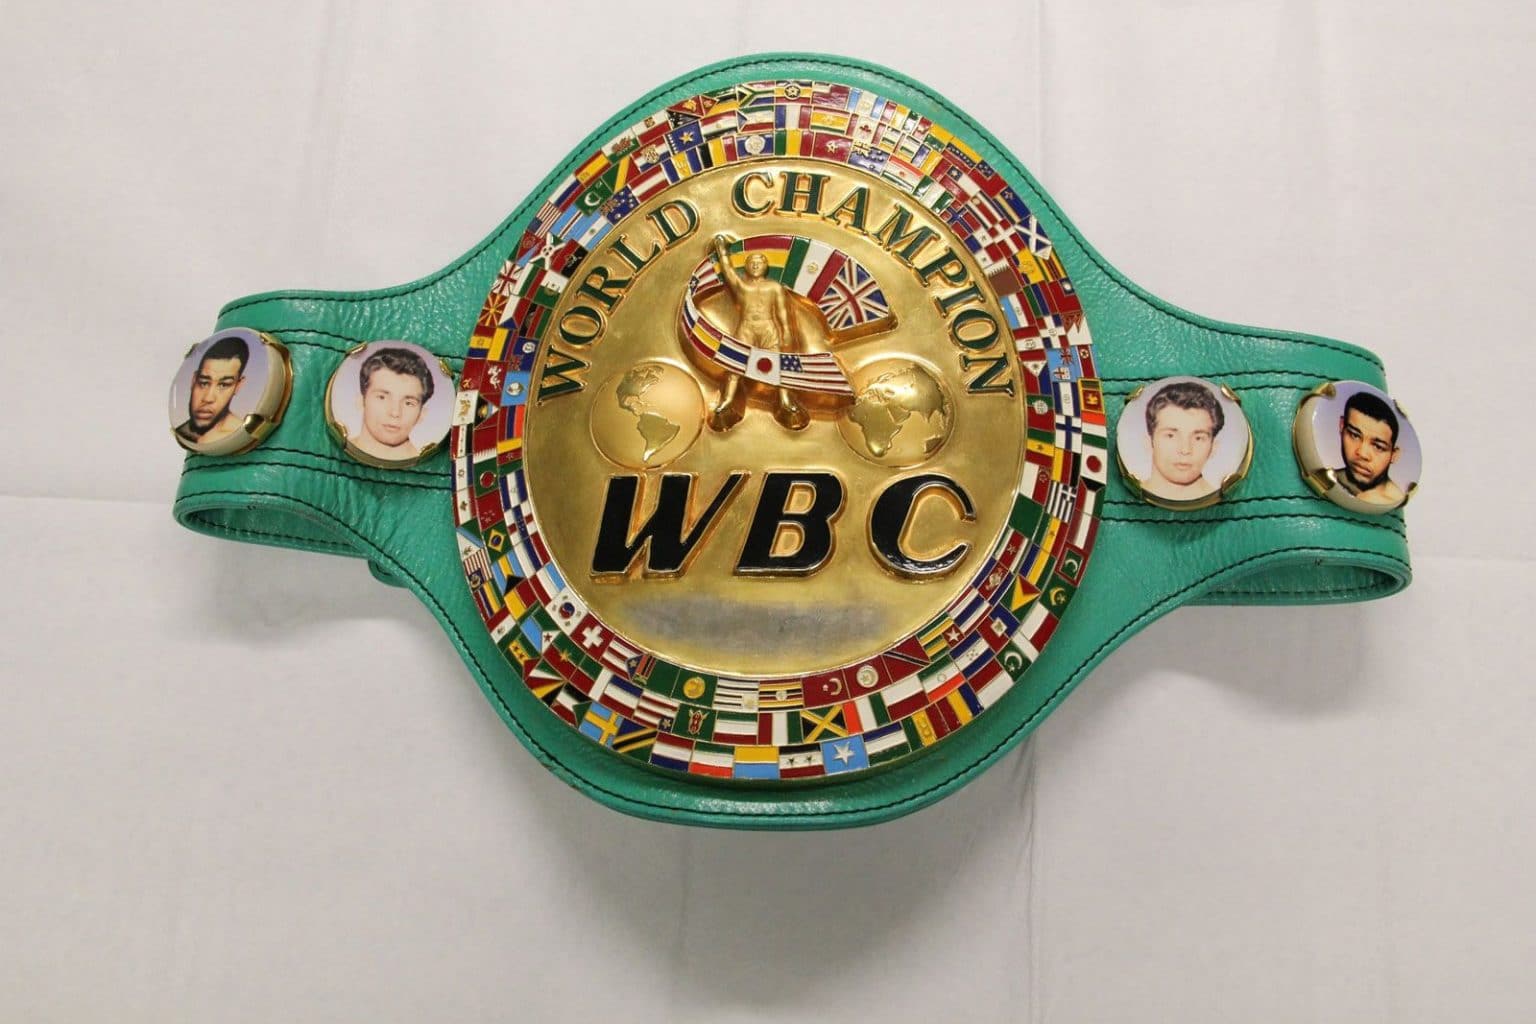 WBC-ն պաշտոնական ներկայացուցիչ կունենա Հայաստանում. կբացվի գրասենյակ